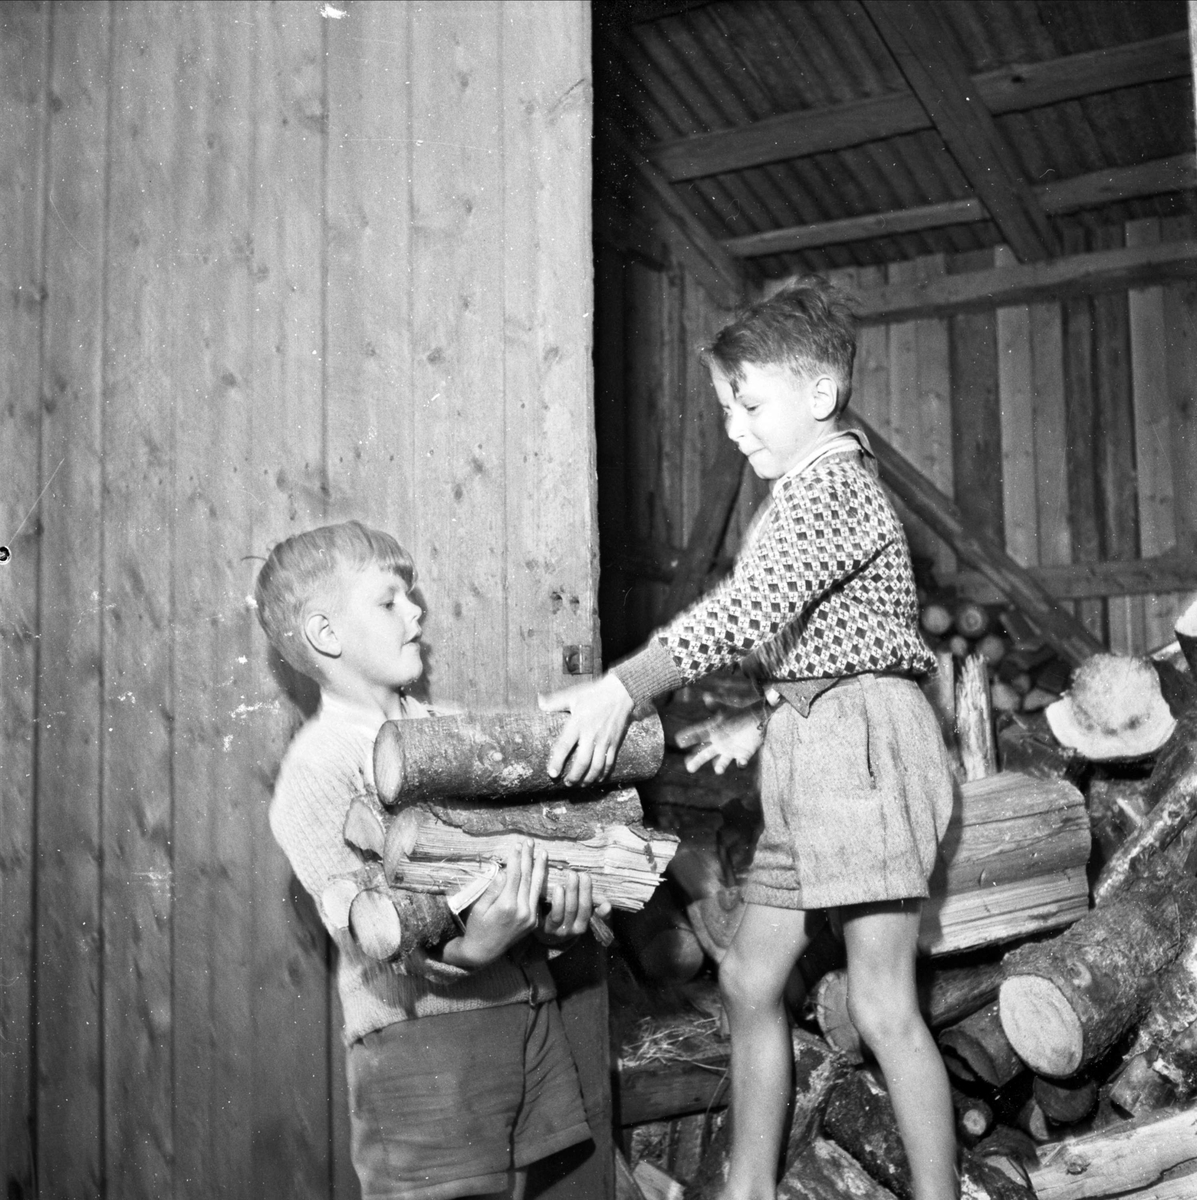 "Edakoloniens barn utan hemlängtan i sommarparadis" - Erik Carlman och Åke Jansson hämtar ved, Eda skollovskoloni, Lagga socken, Uppland juni 1952